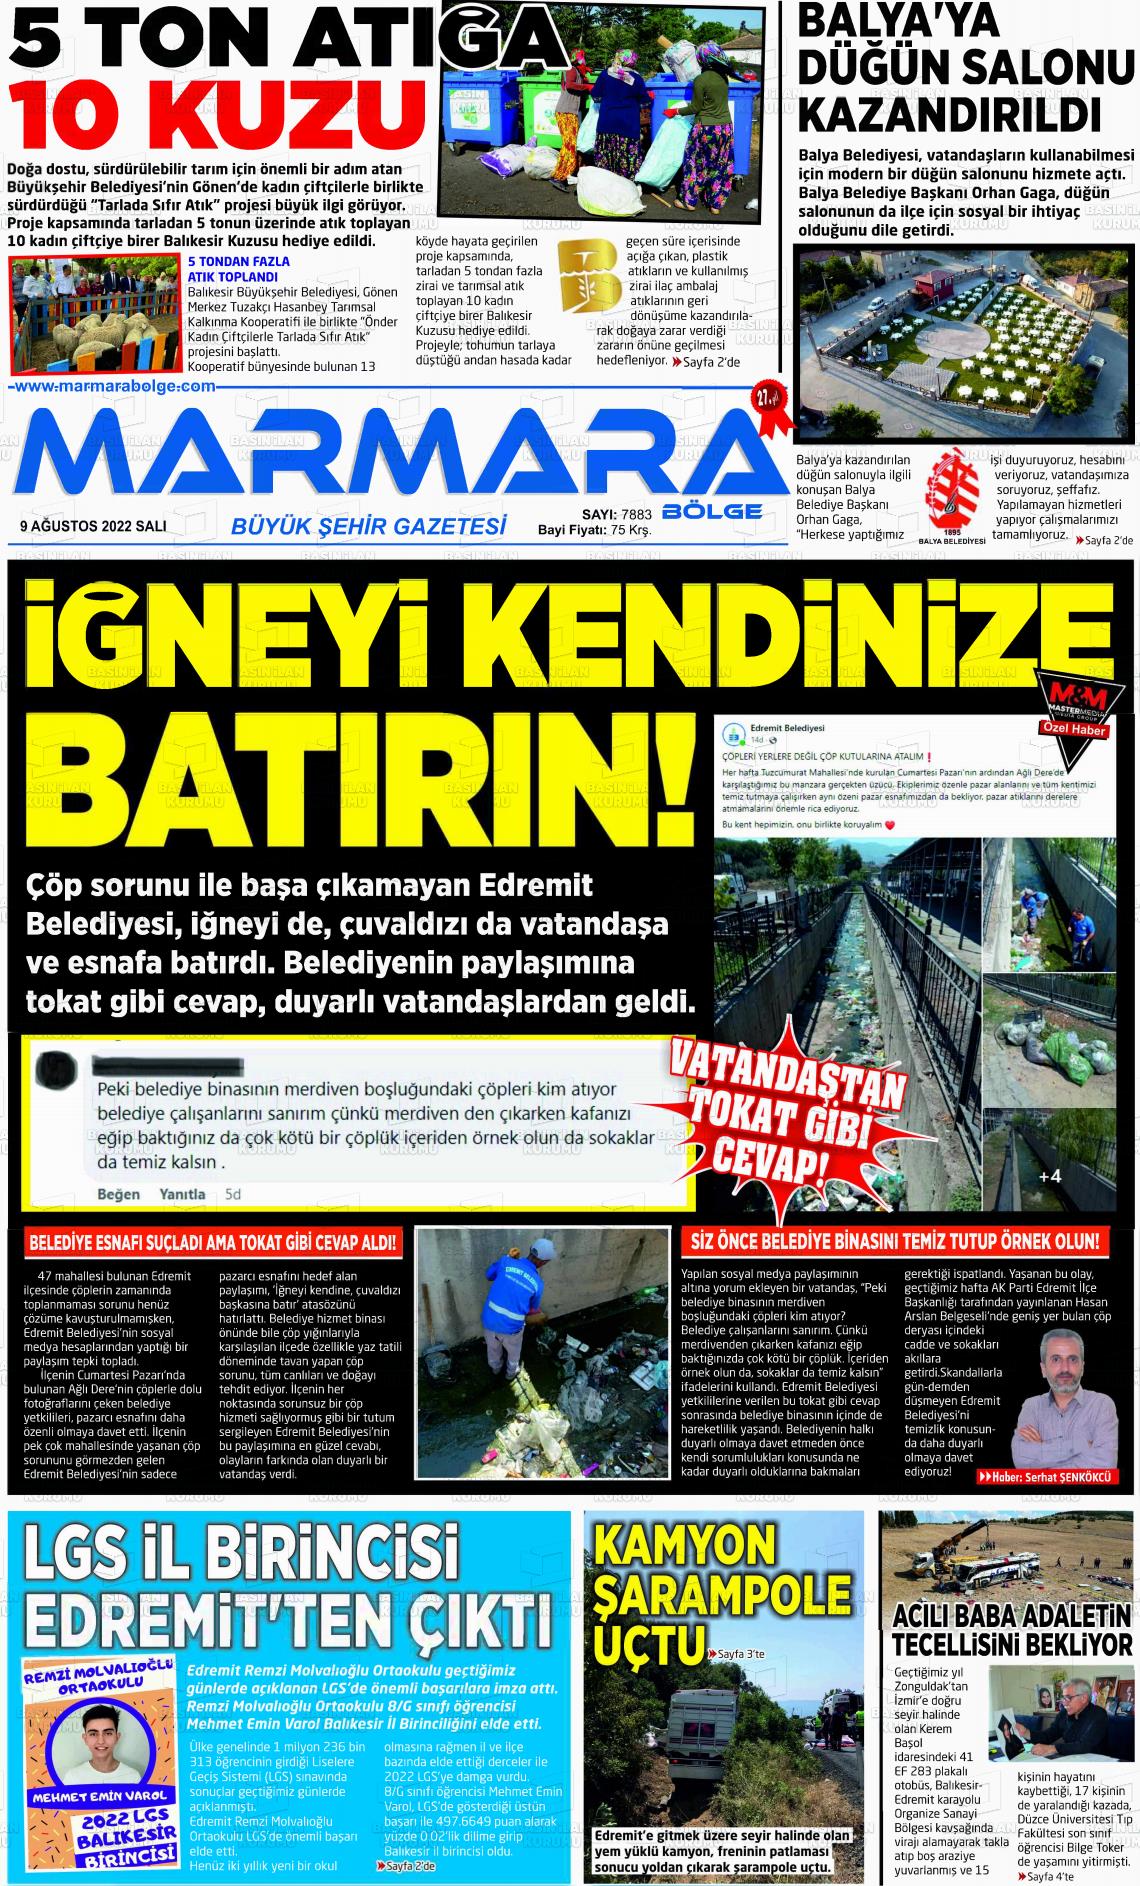 09 Ağustos 2022 Marmara Bölge Gazete Manşeti